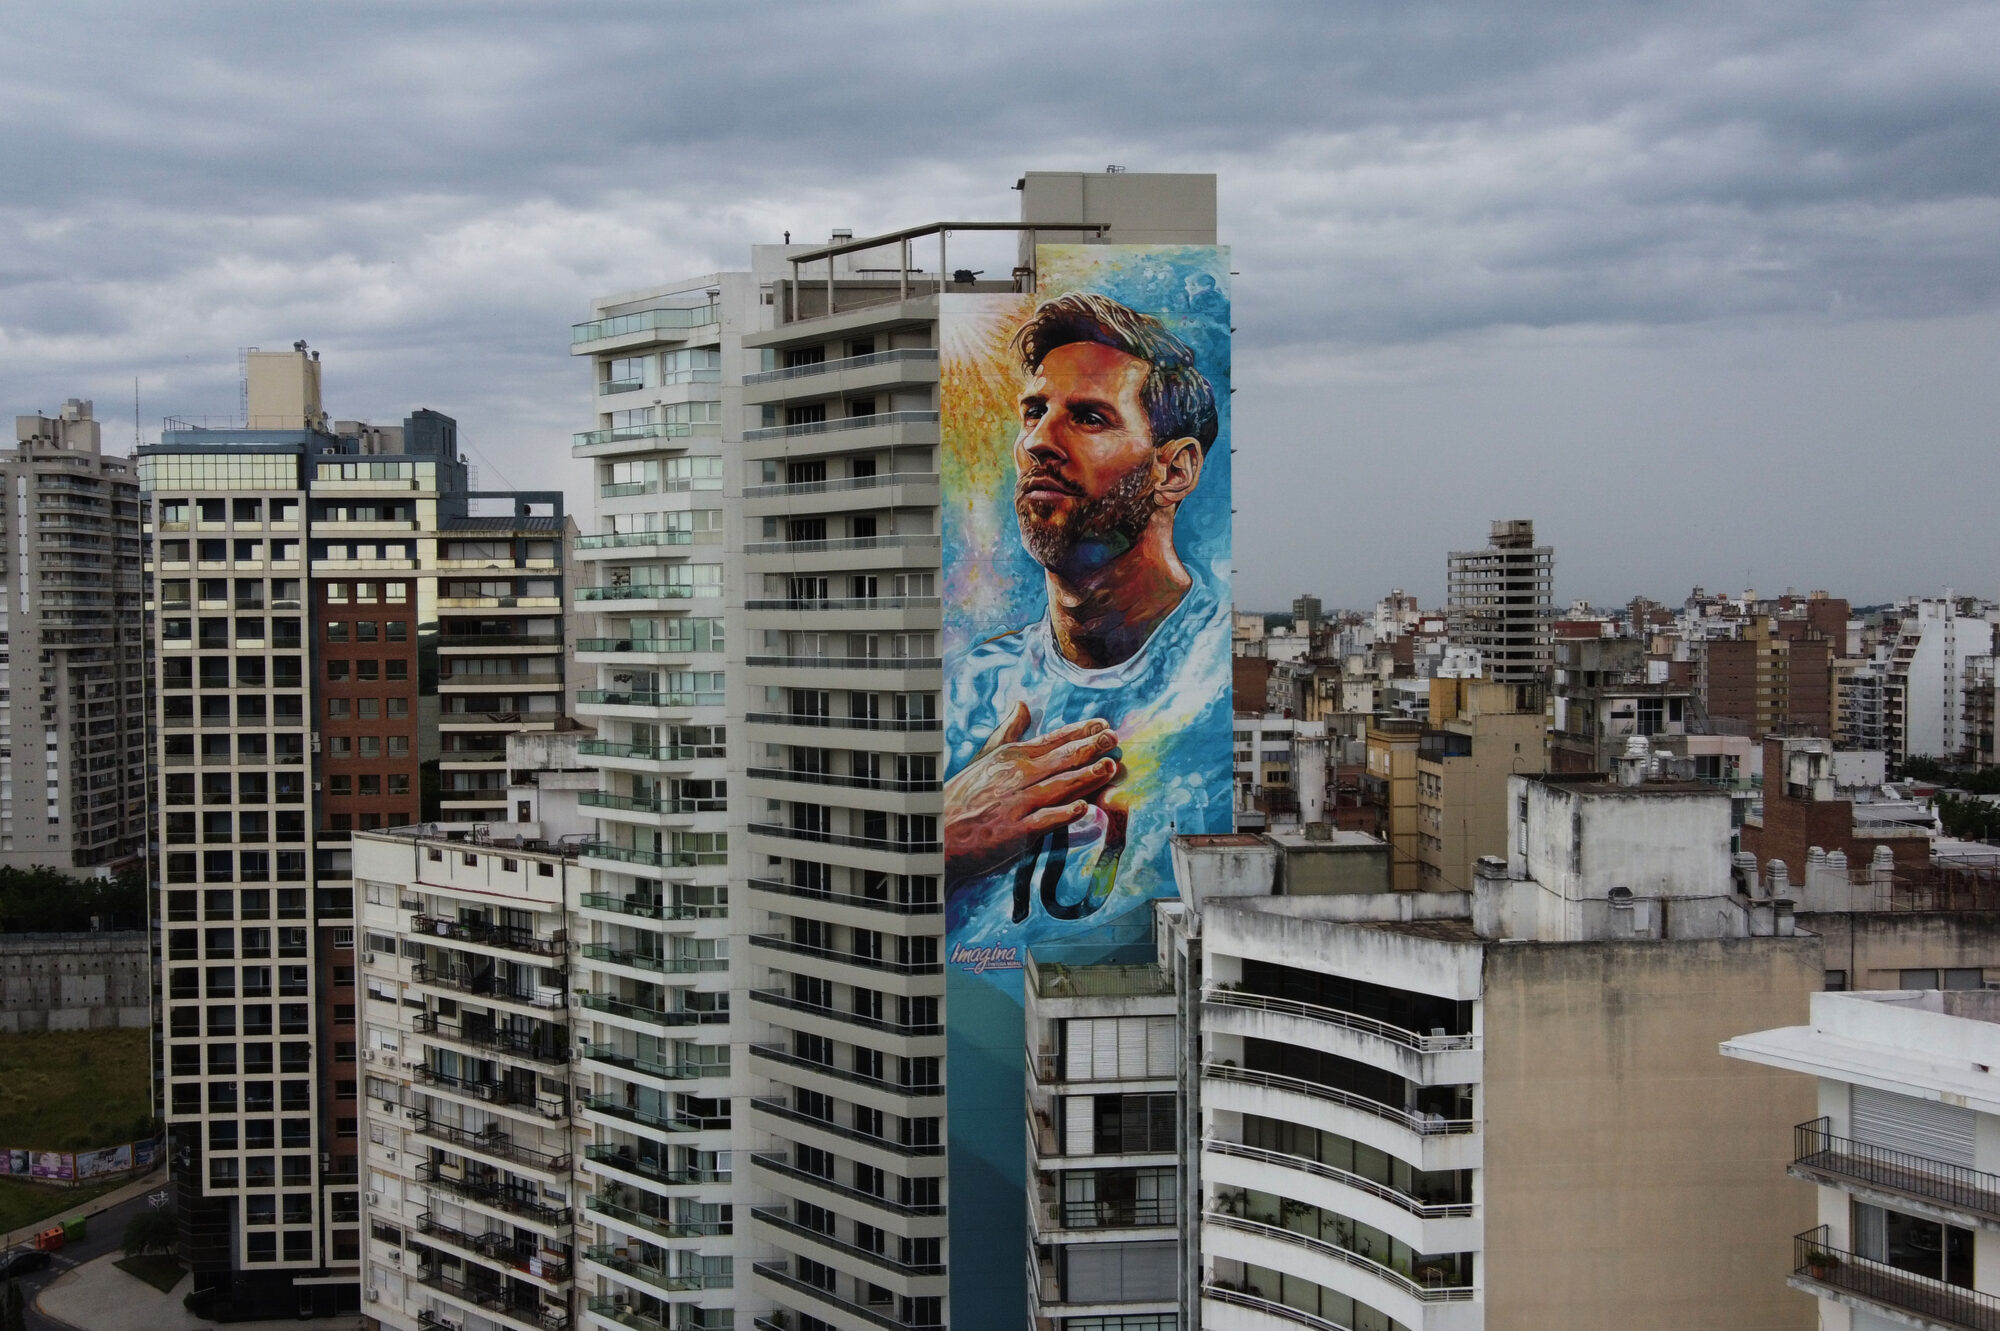 Inauguran el mayor mural de Rosario en homenaje a Messi: Mide 69 metros de alto y se llama “De otra galaxia y de mi ciudad”